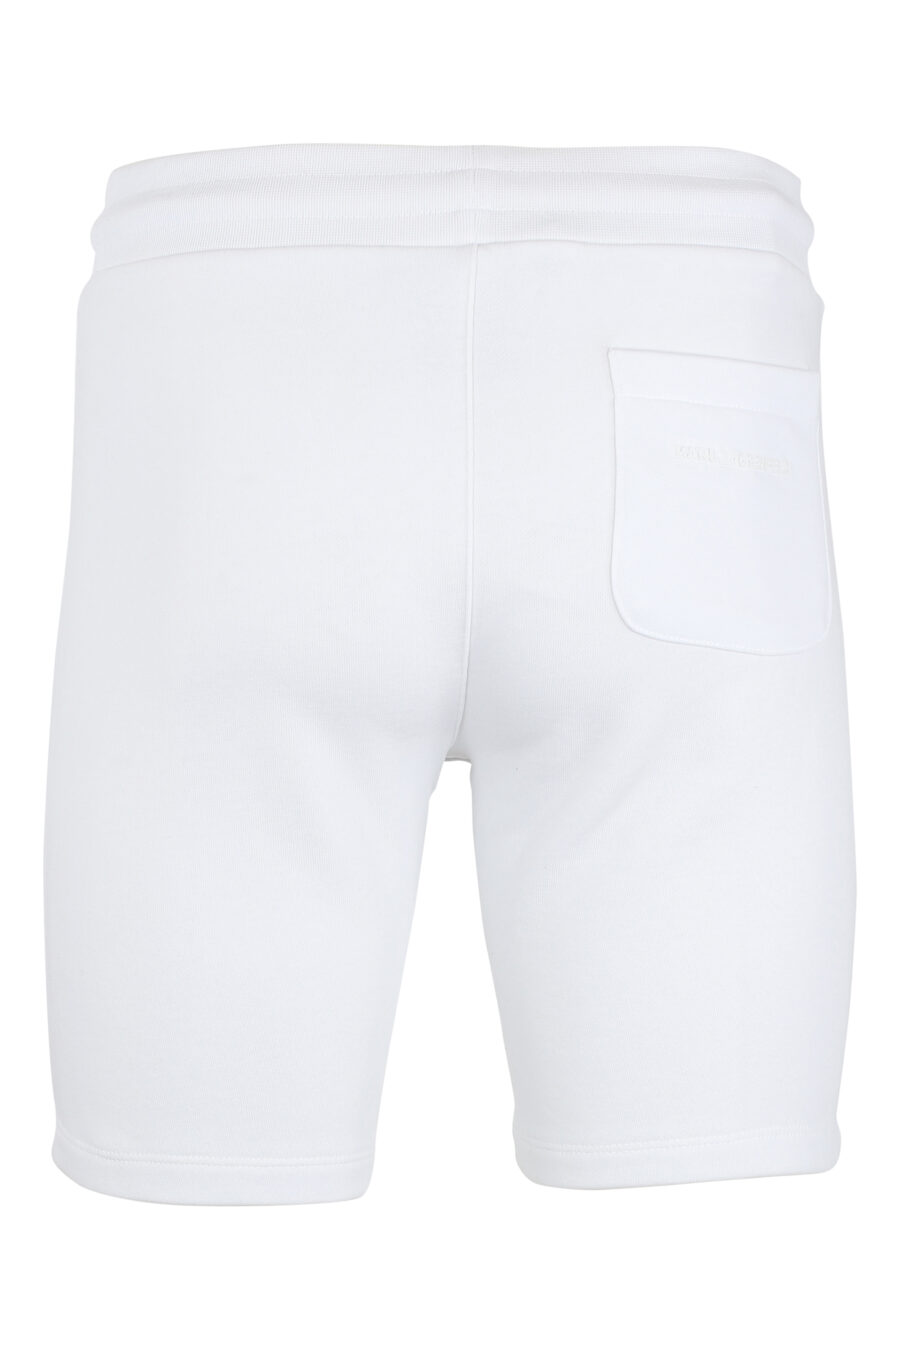 Calças de fato de treino curtas brancas com minilogo "karl" em silhueta preta - IMG 9516